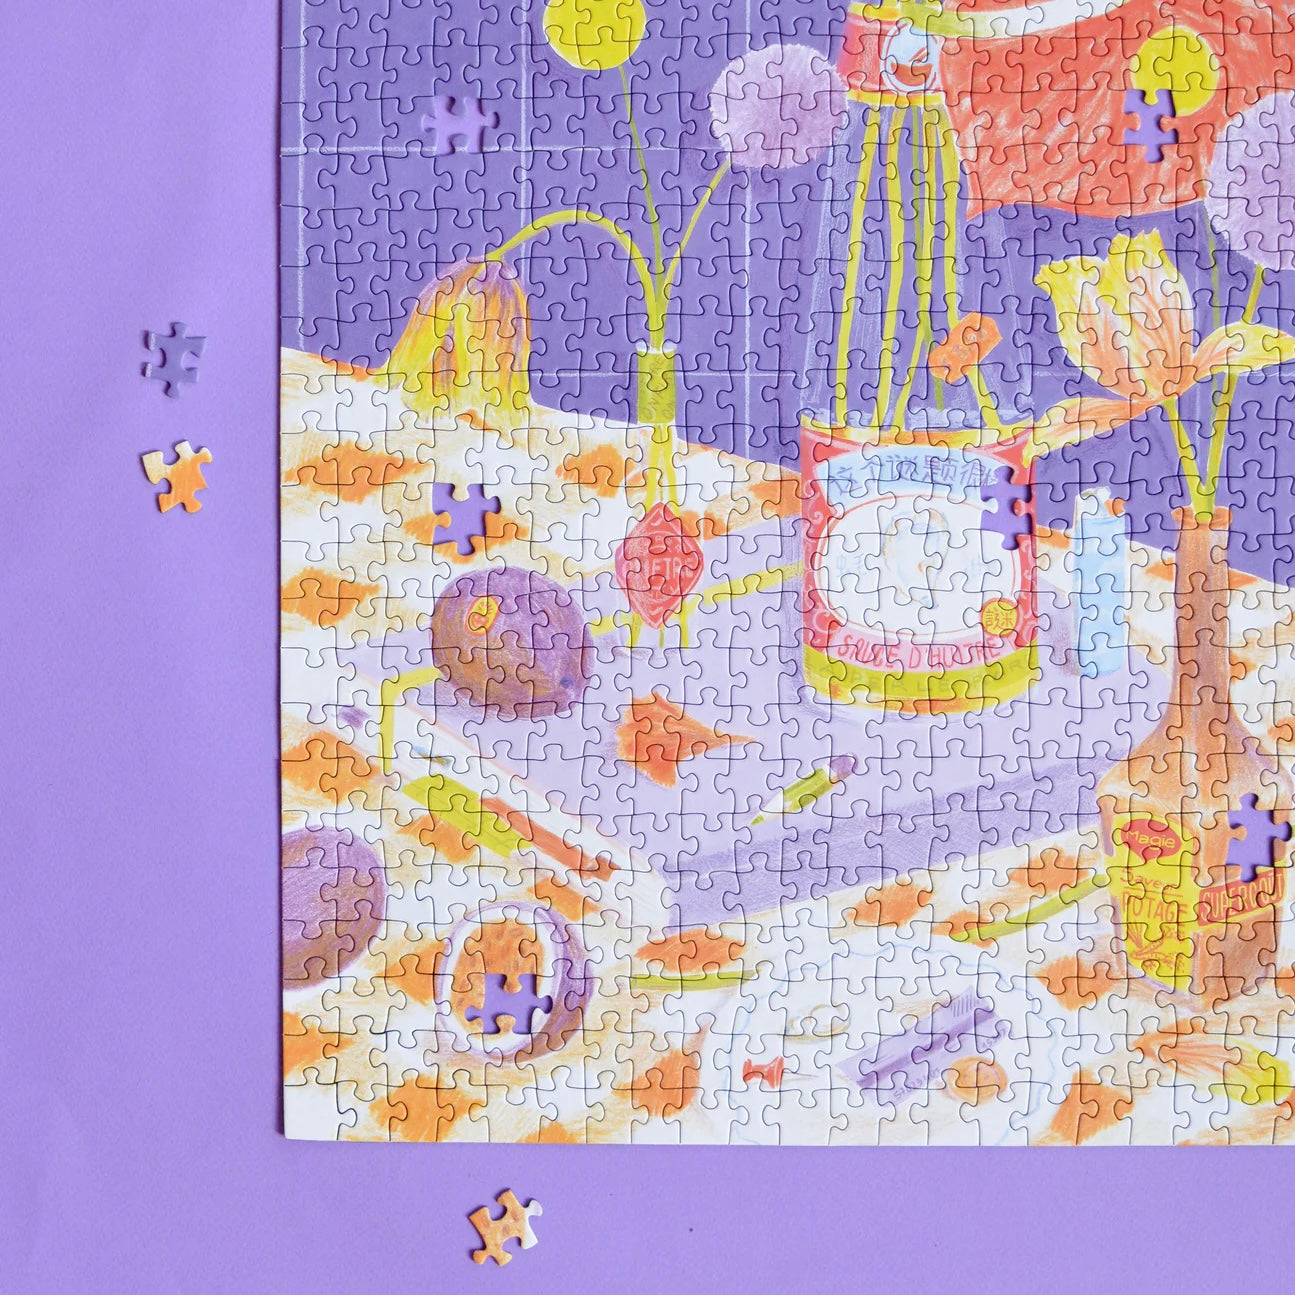 Puzzle 1000 piezas - Flores sobre la mesa